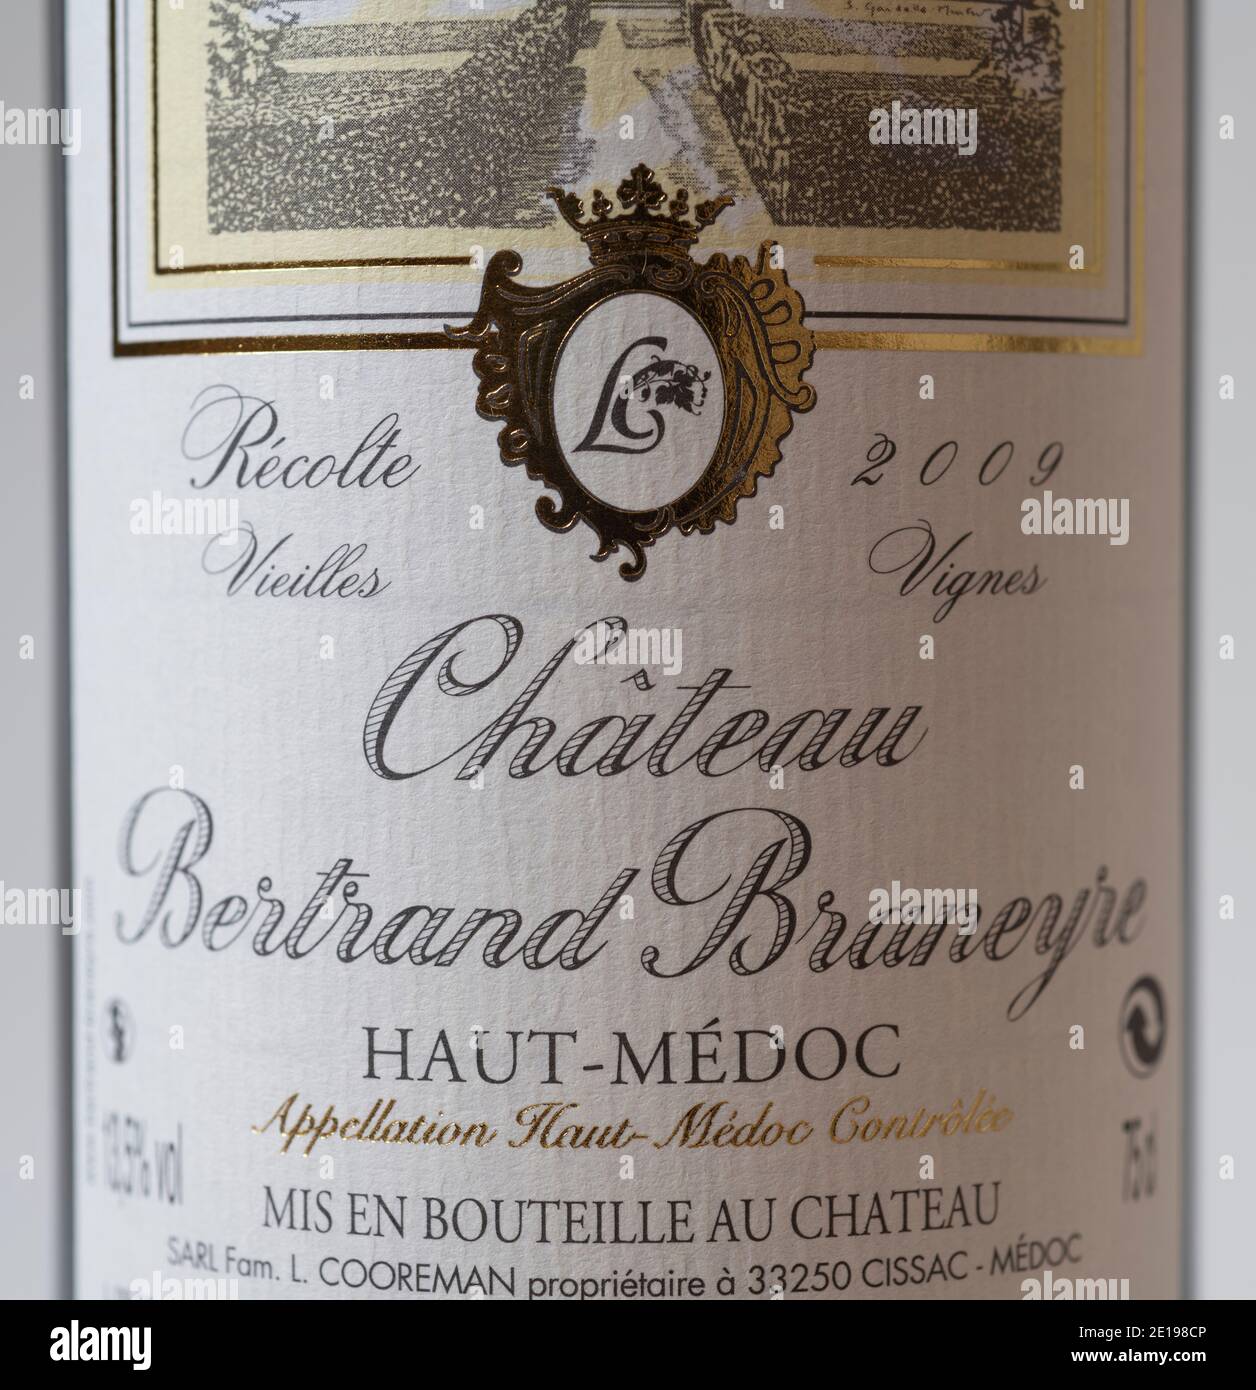 Château Bertrand Braneyre 2010 Haut-Médoc wine bottle label Stock Photo